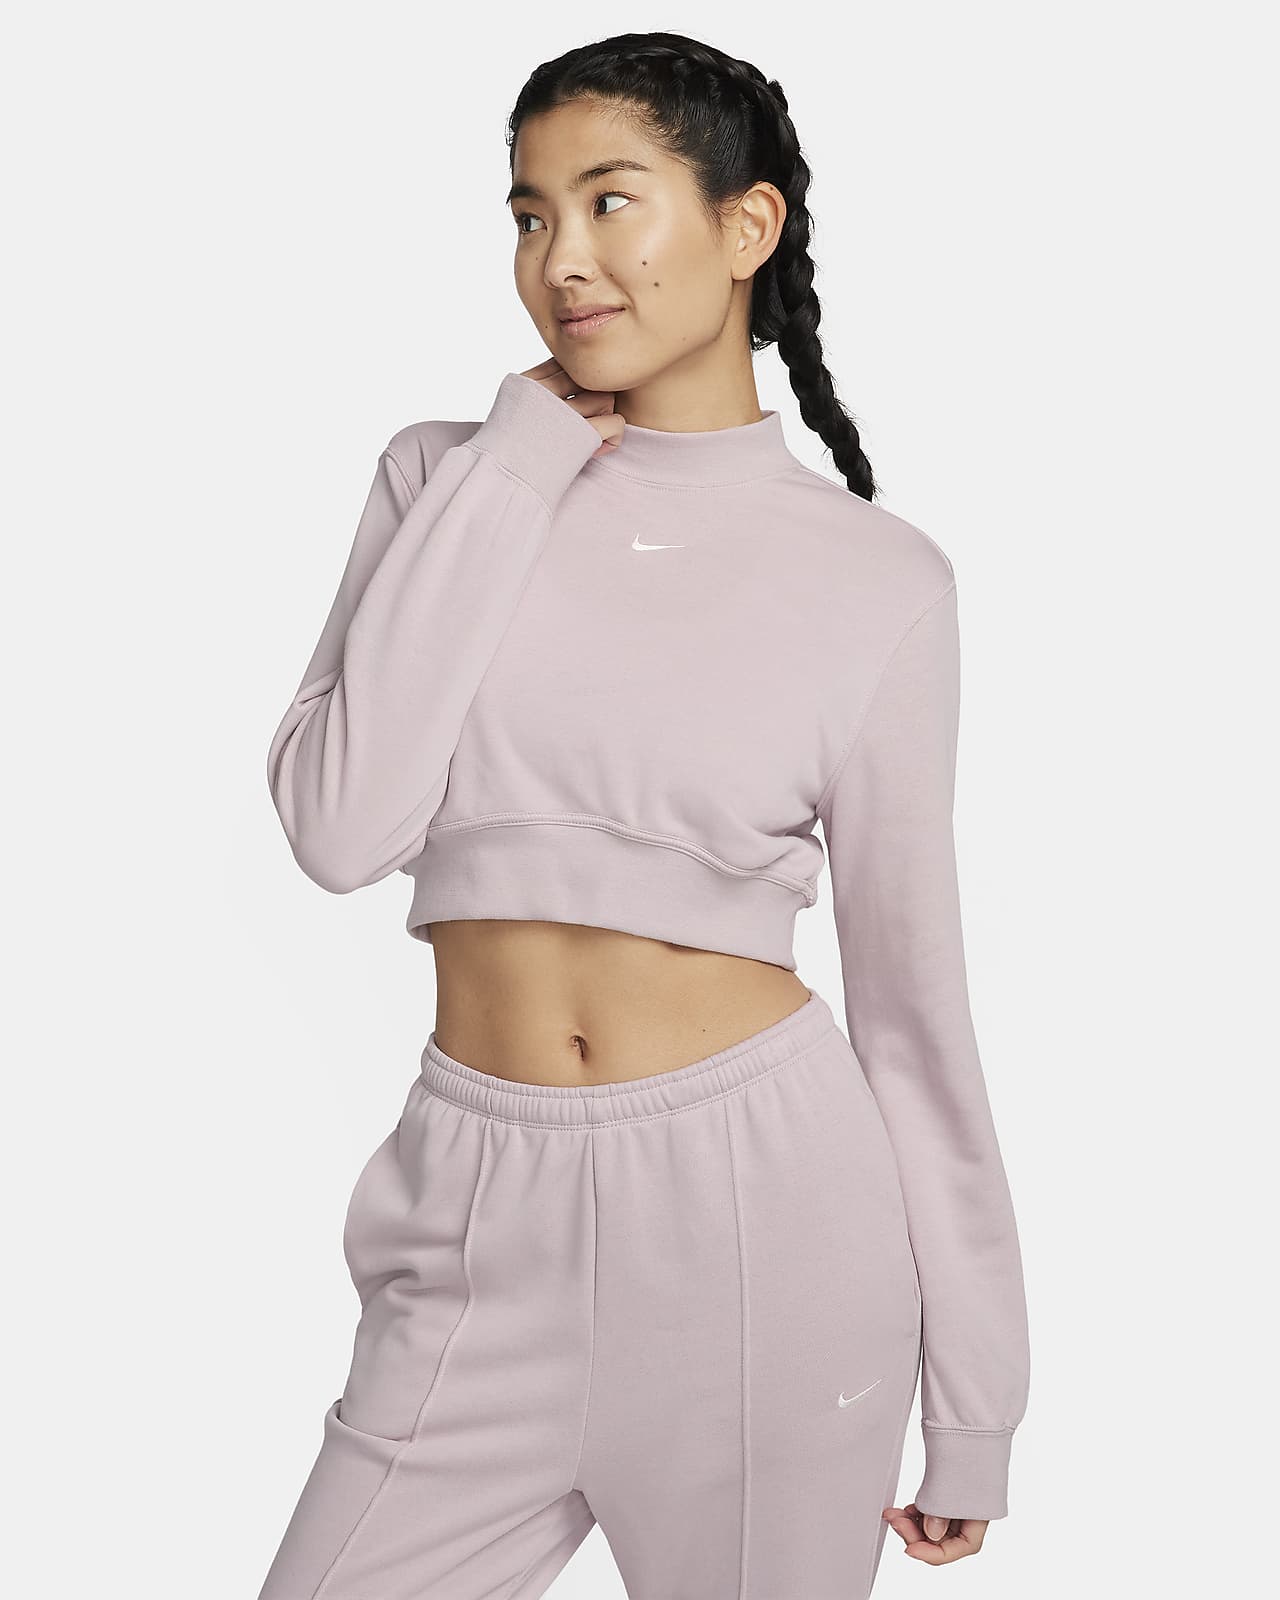 เสื้อเอวลอยคอกลมผ้าเฟรนช์เทรีผู้หญิง Nike Sportswear Chill Terry